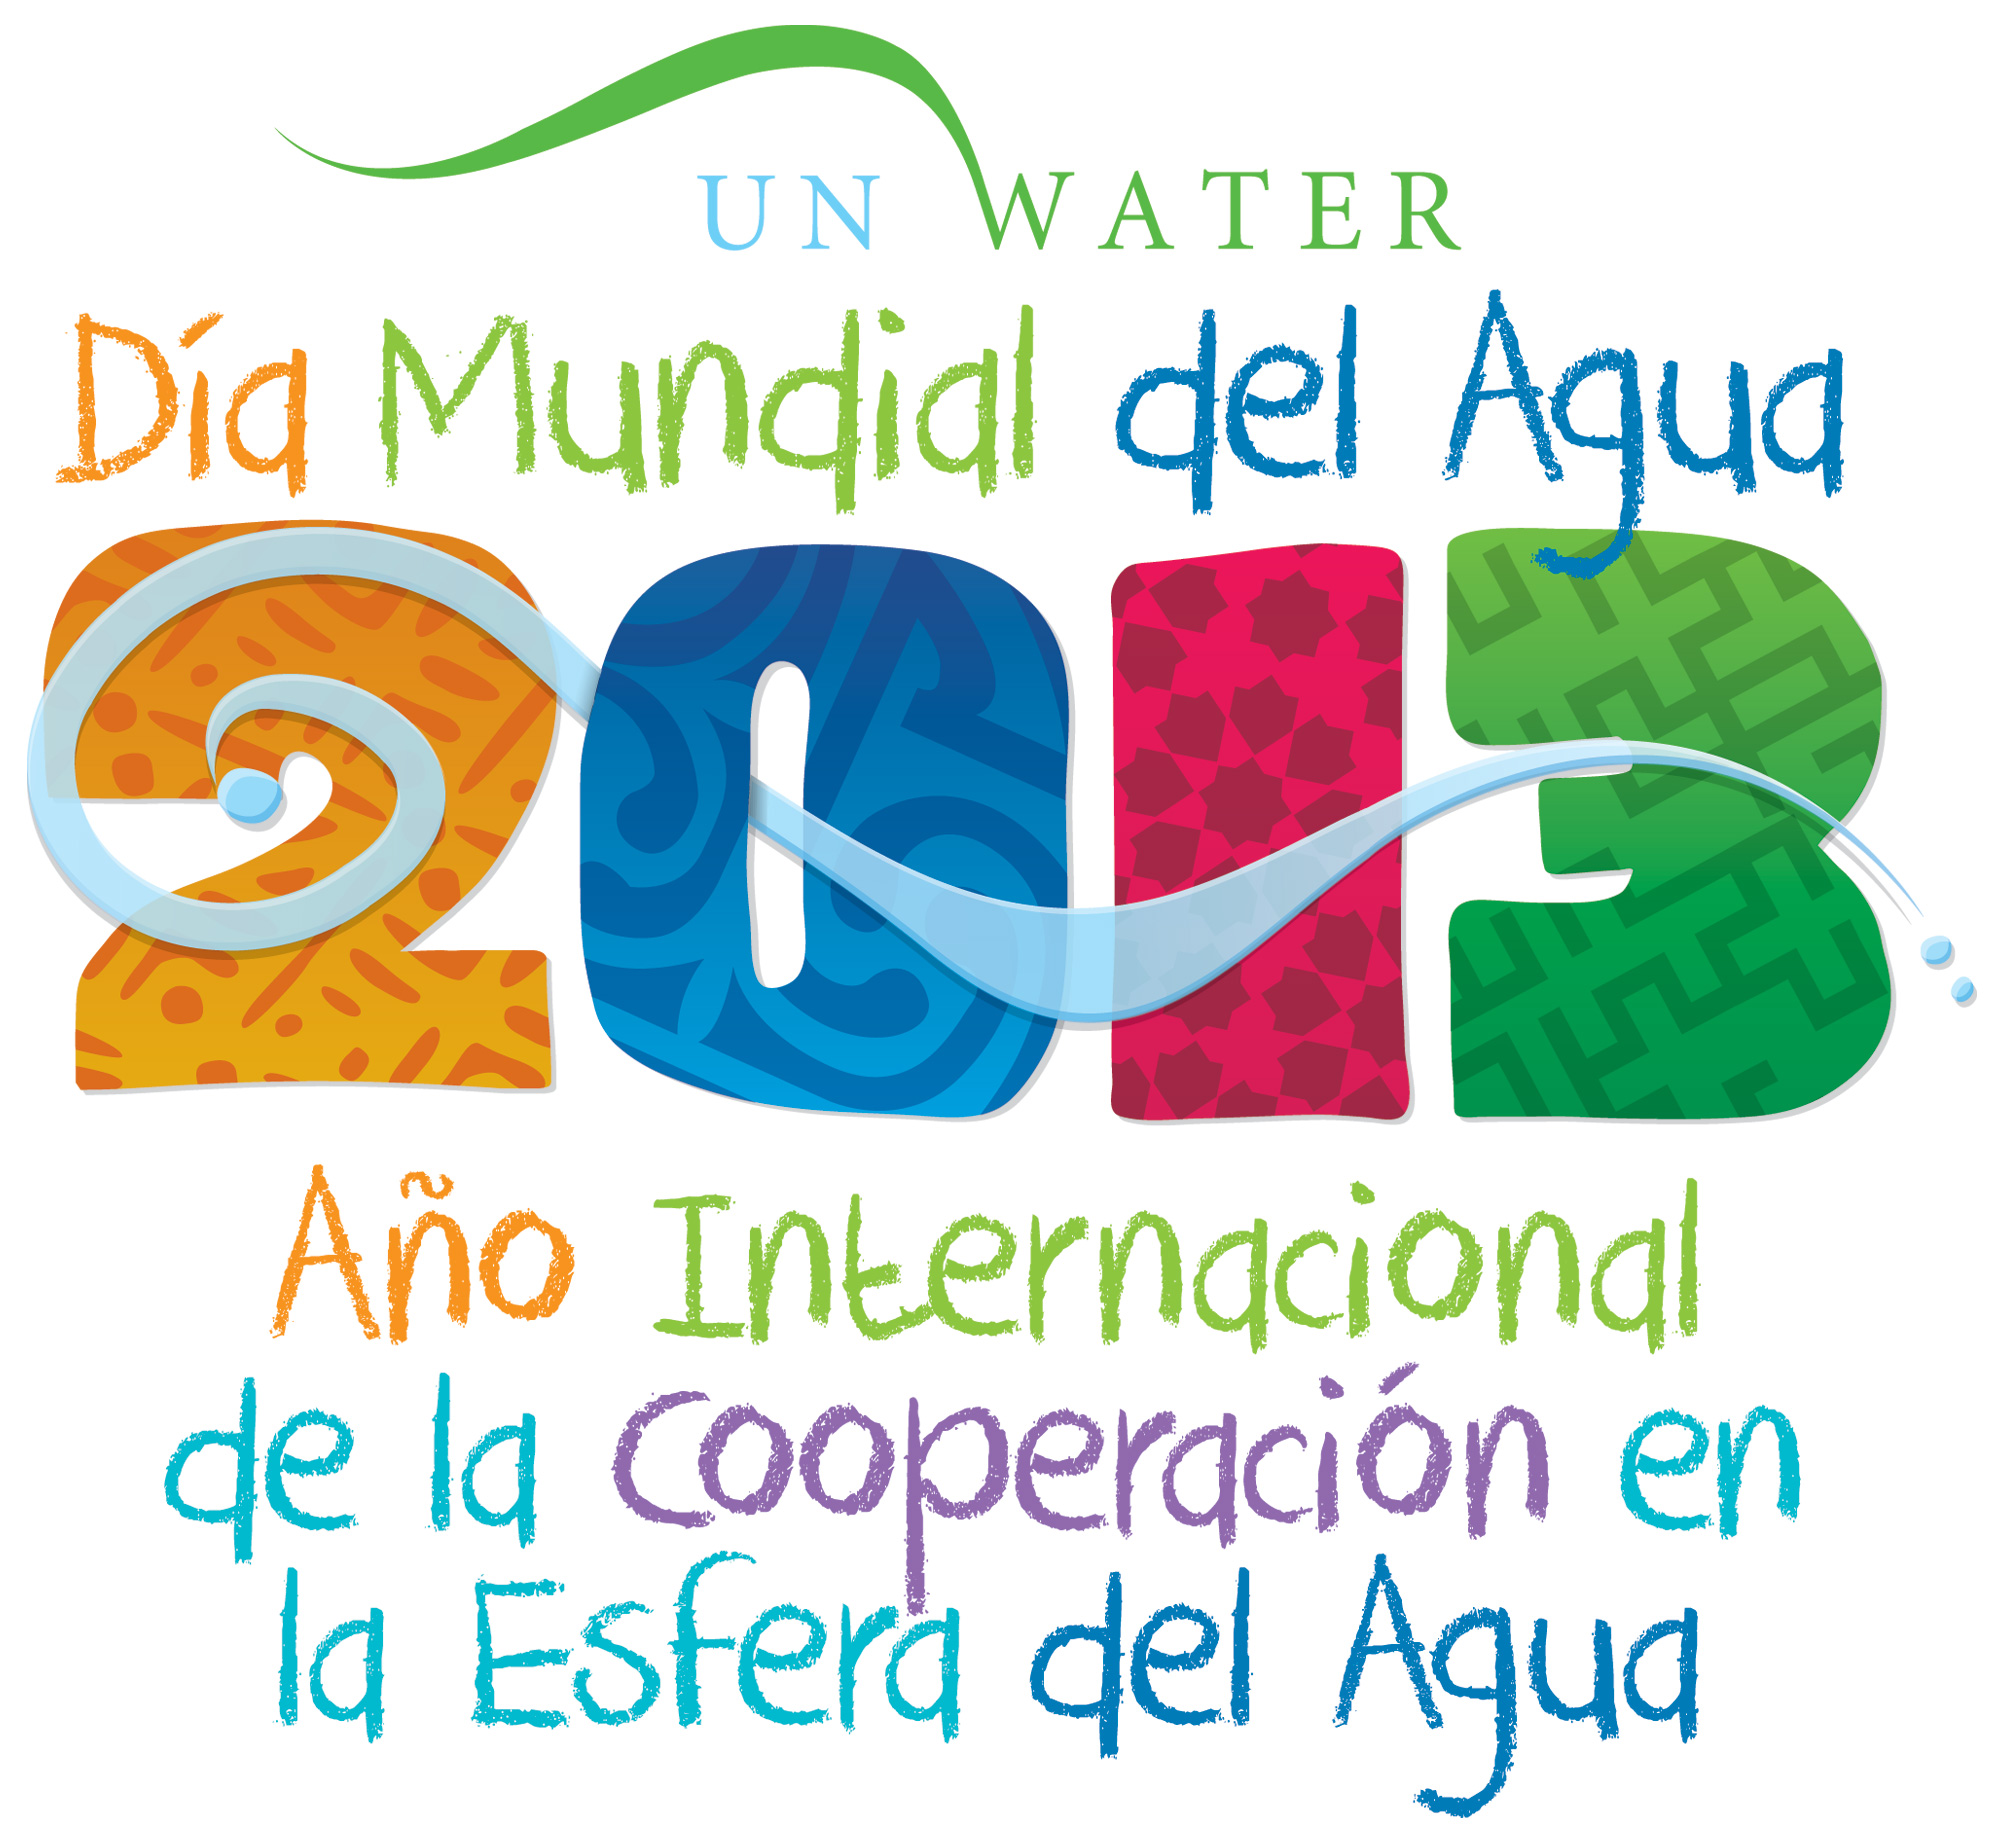 Calendario FNMT 2013 Año internacional de la cooperación en la esfera de agua